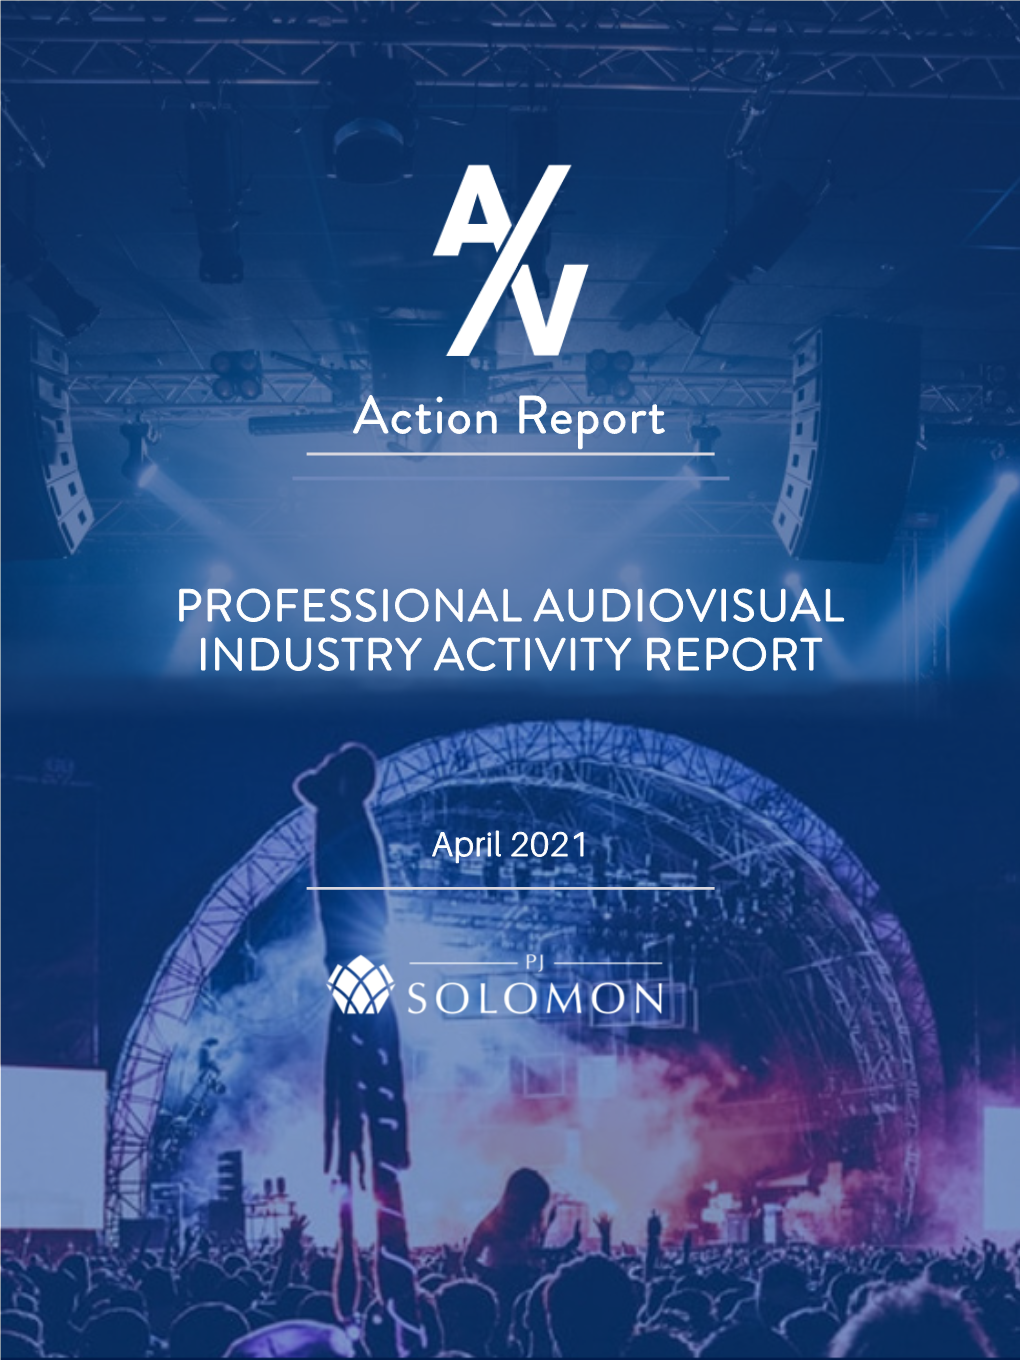 PJ SOLOMON AV Action Report